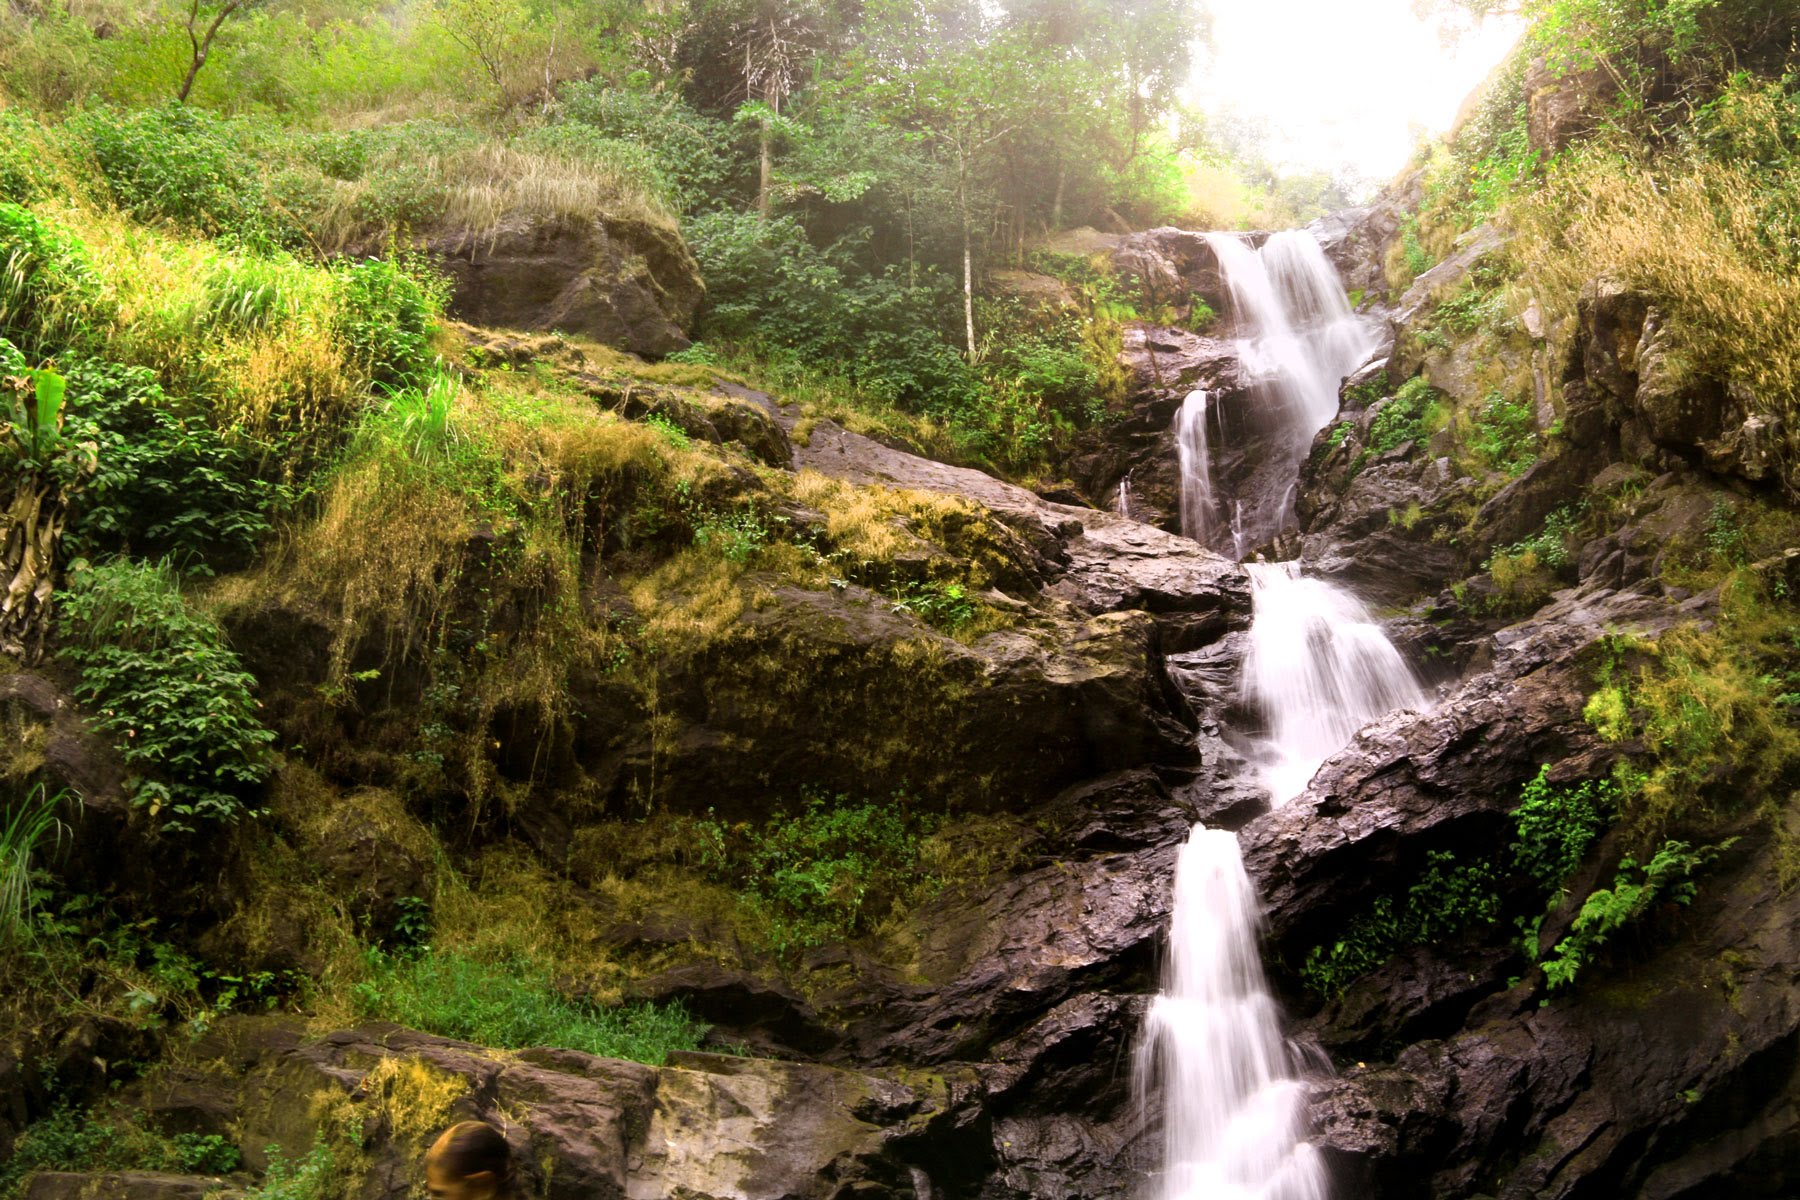 Irupu Falls